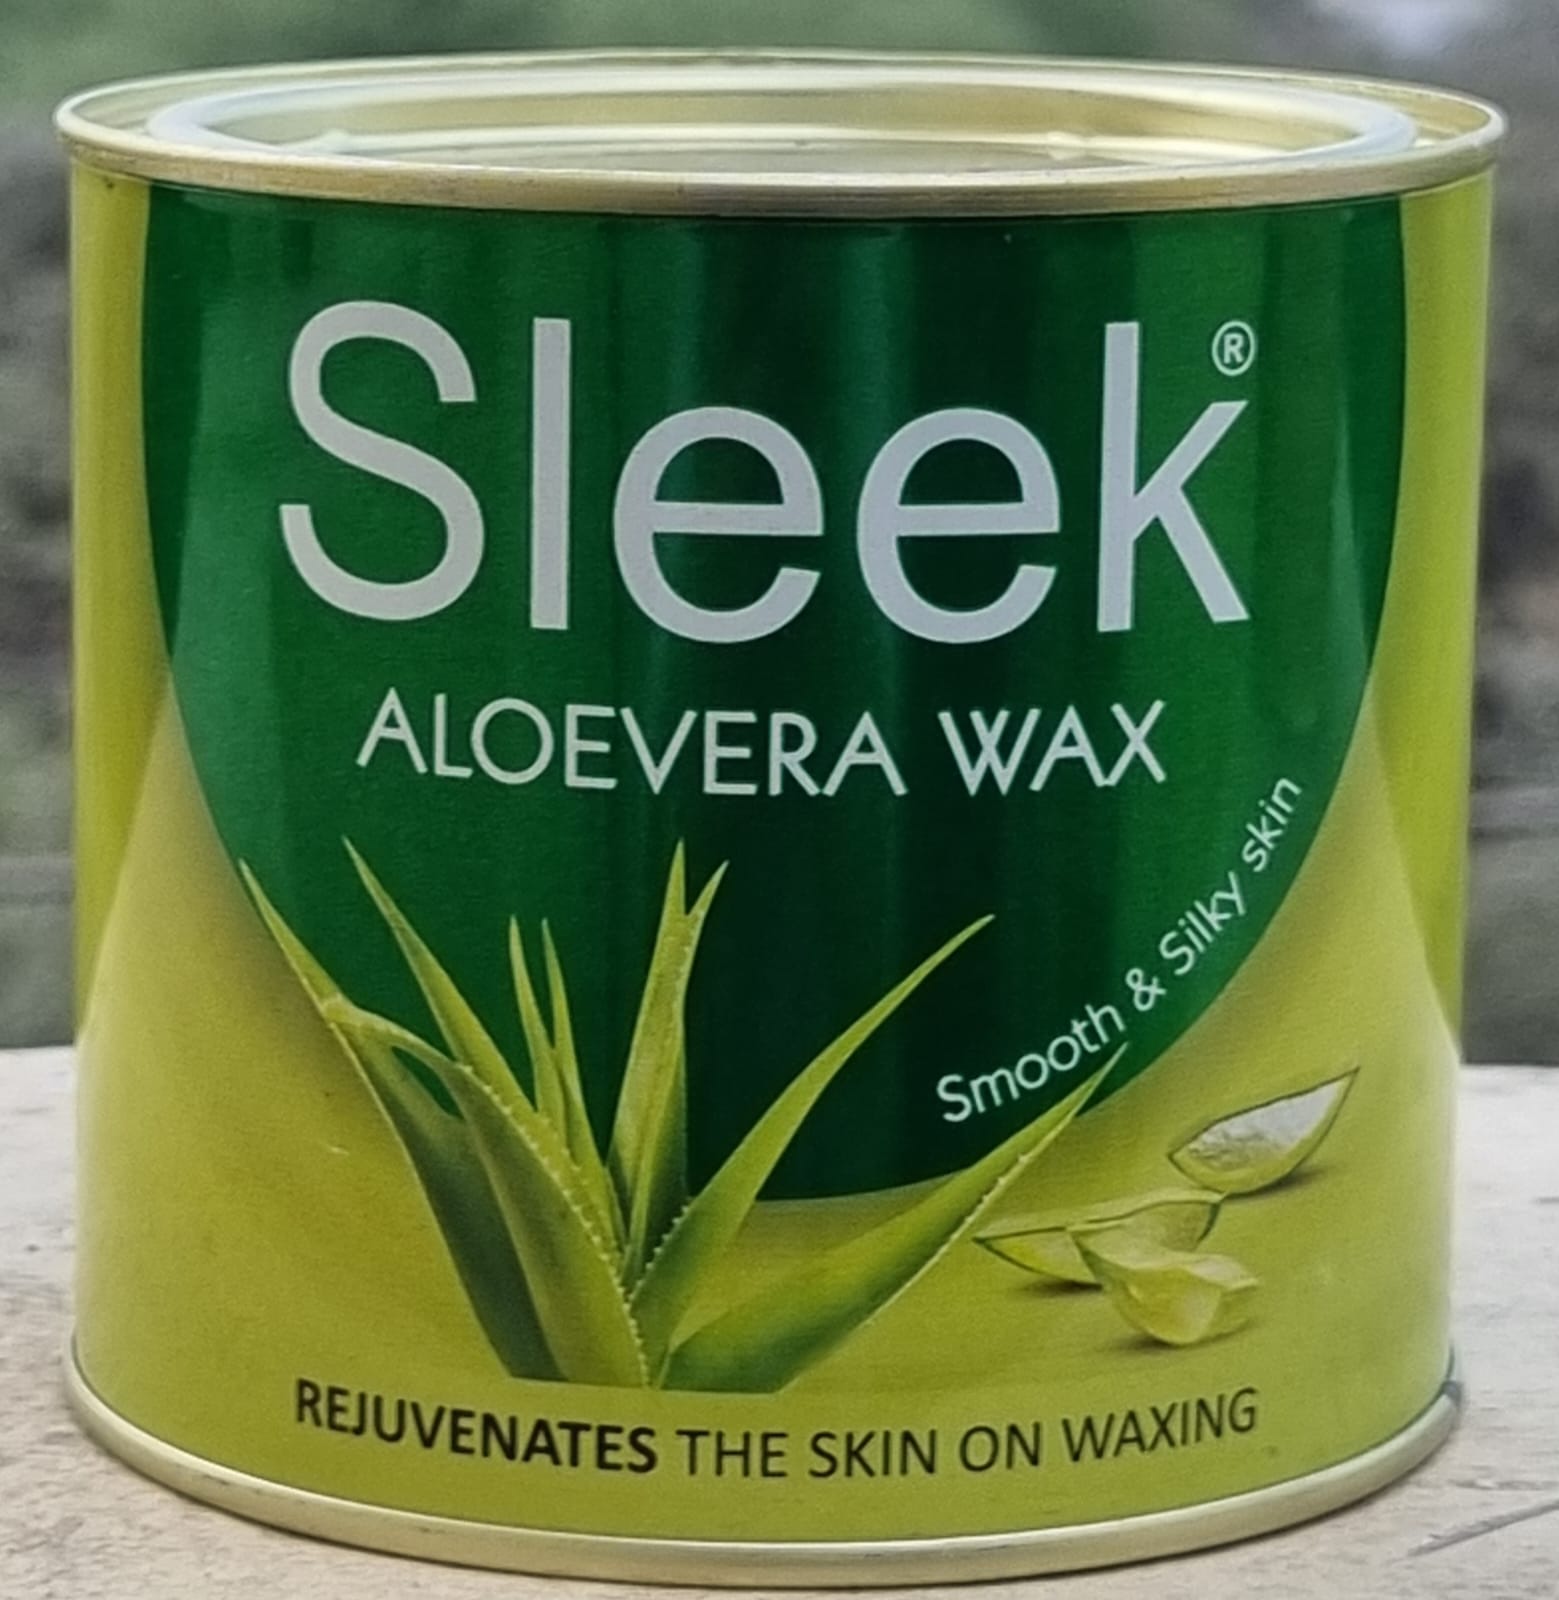 sleek-hot-wax-600-g